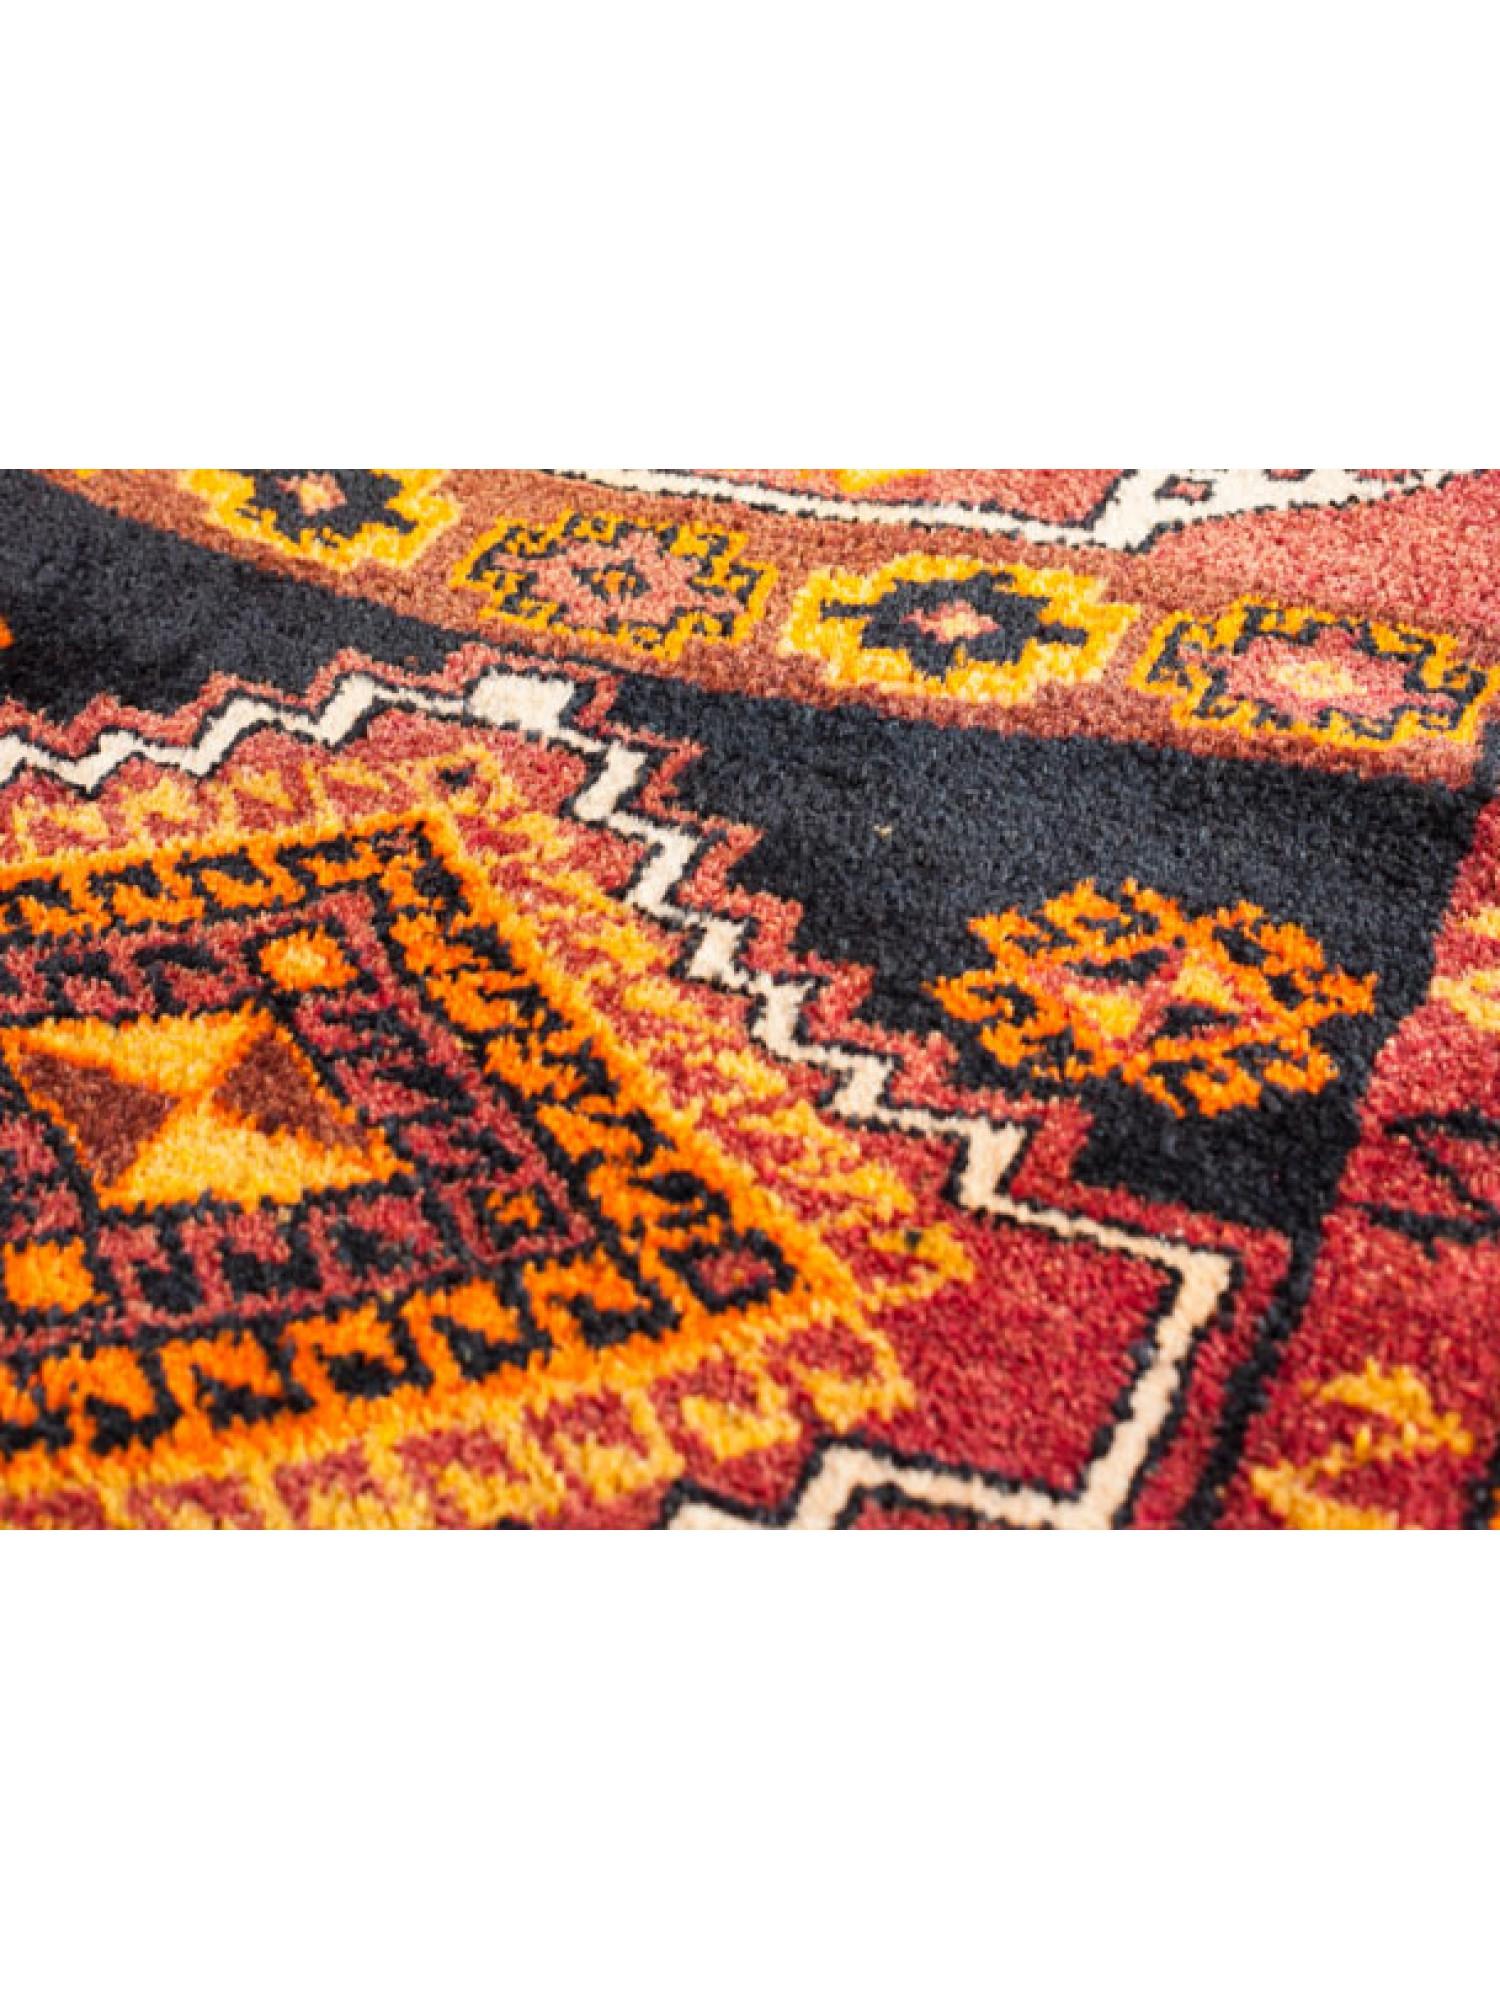 Dies ist ein antiker kurdischer Herki-Teppich aus der Region Ostanatolien und Nordirak mit einer seltenen und schönen Farbkomposition.

Die irakischen Kurden leben hauptsächlich in einer gebirgigen Region im Norden und Nordosten des Irak. Die